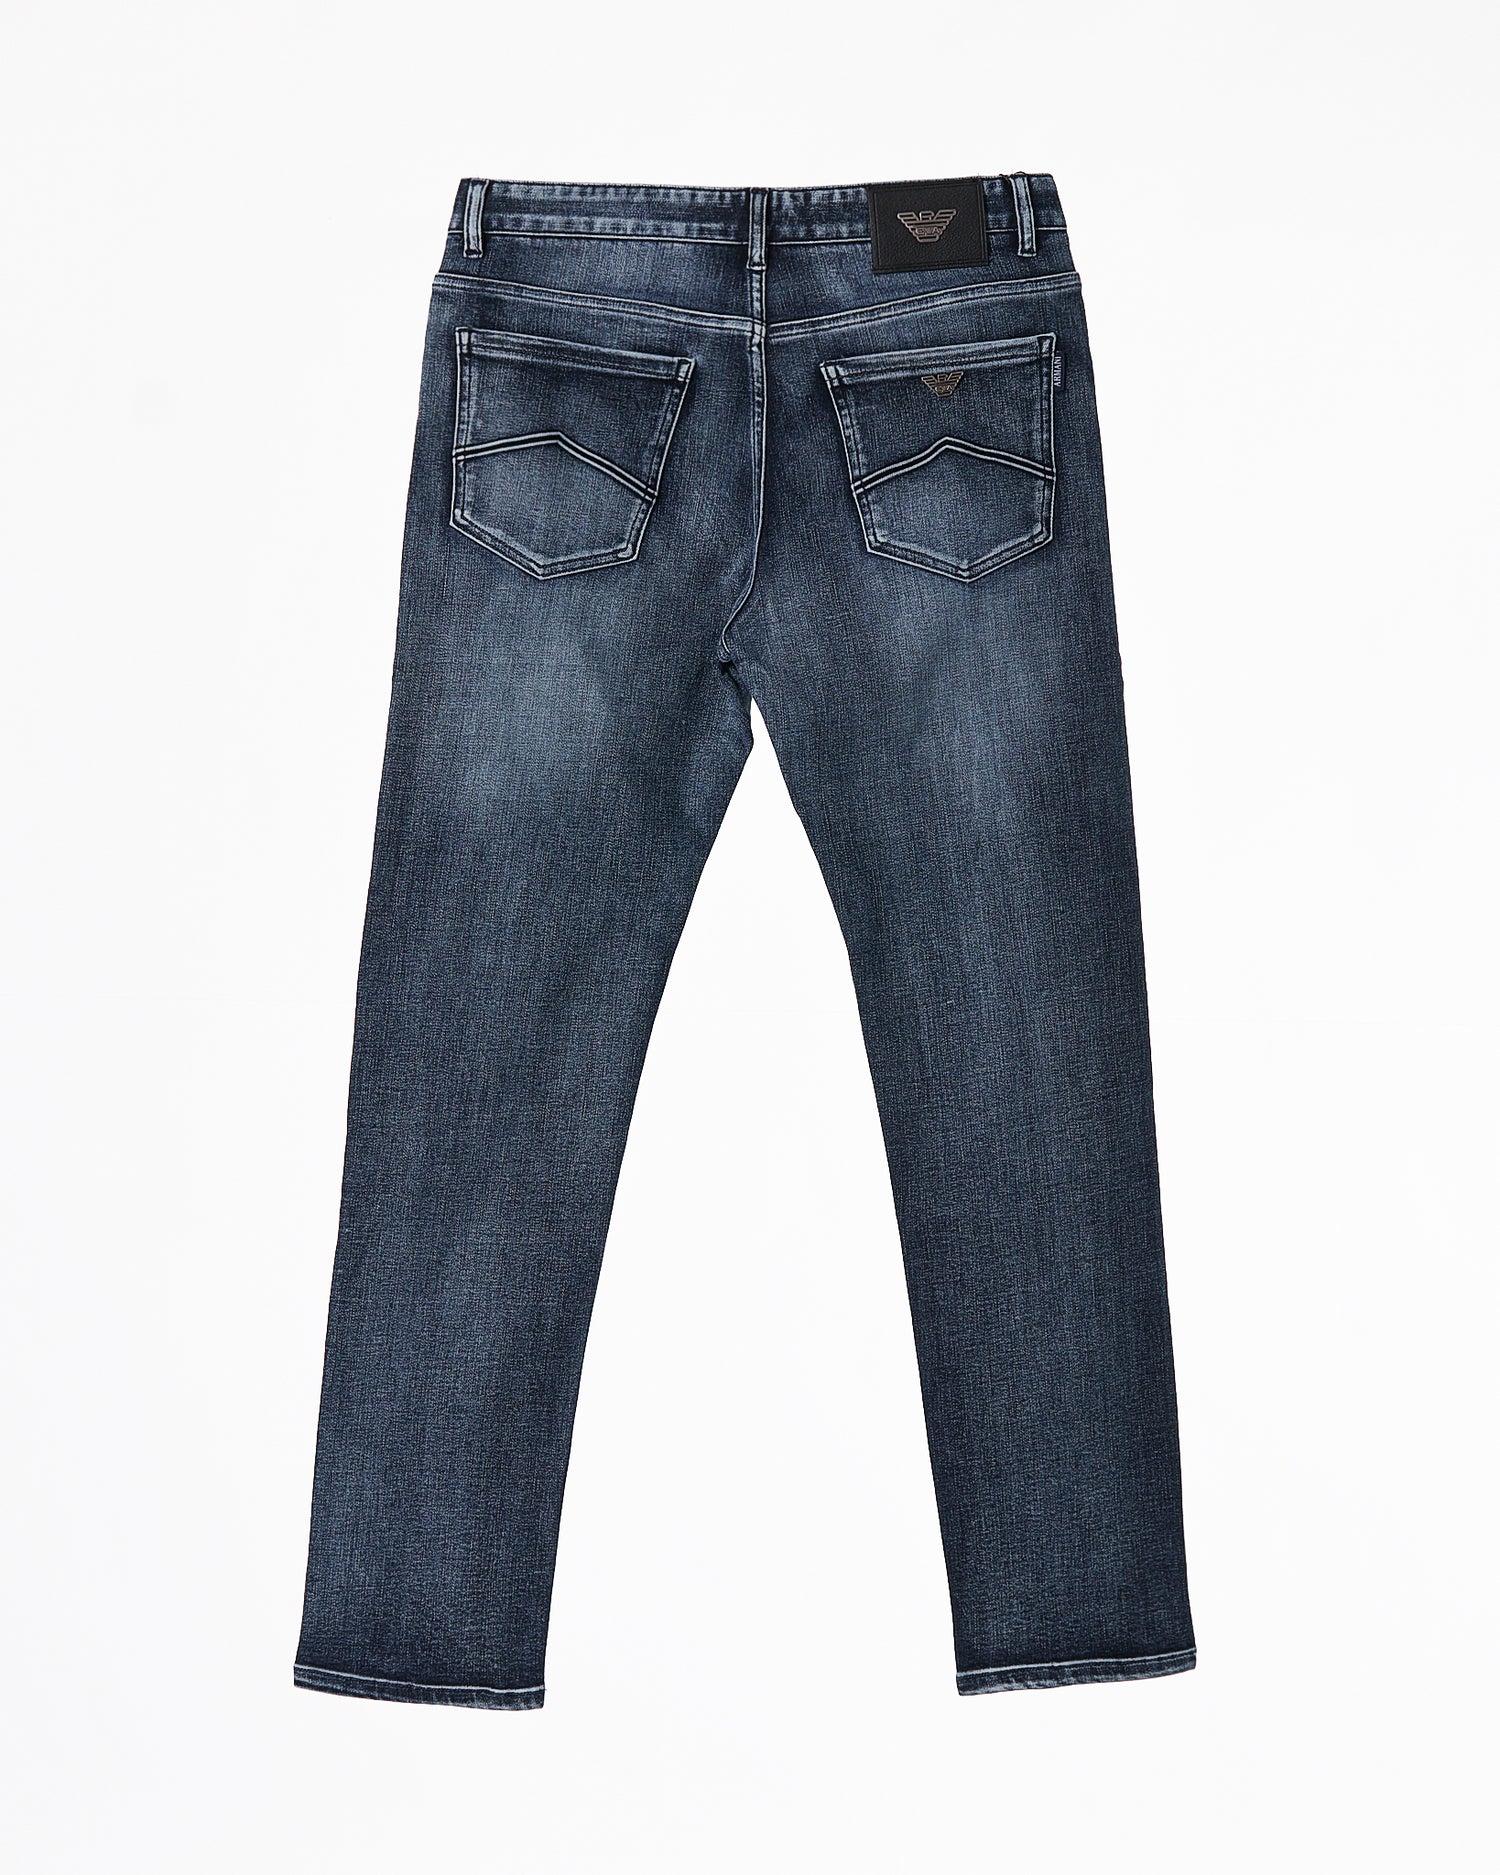 ARM Premium Soft Stretchy Men Blue Slim Fit Jeans 65.90